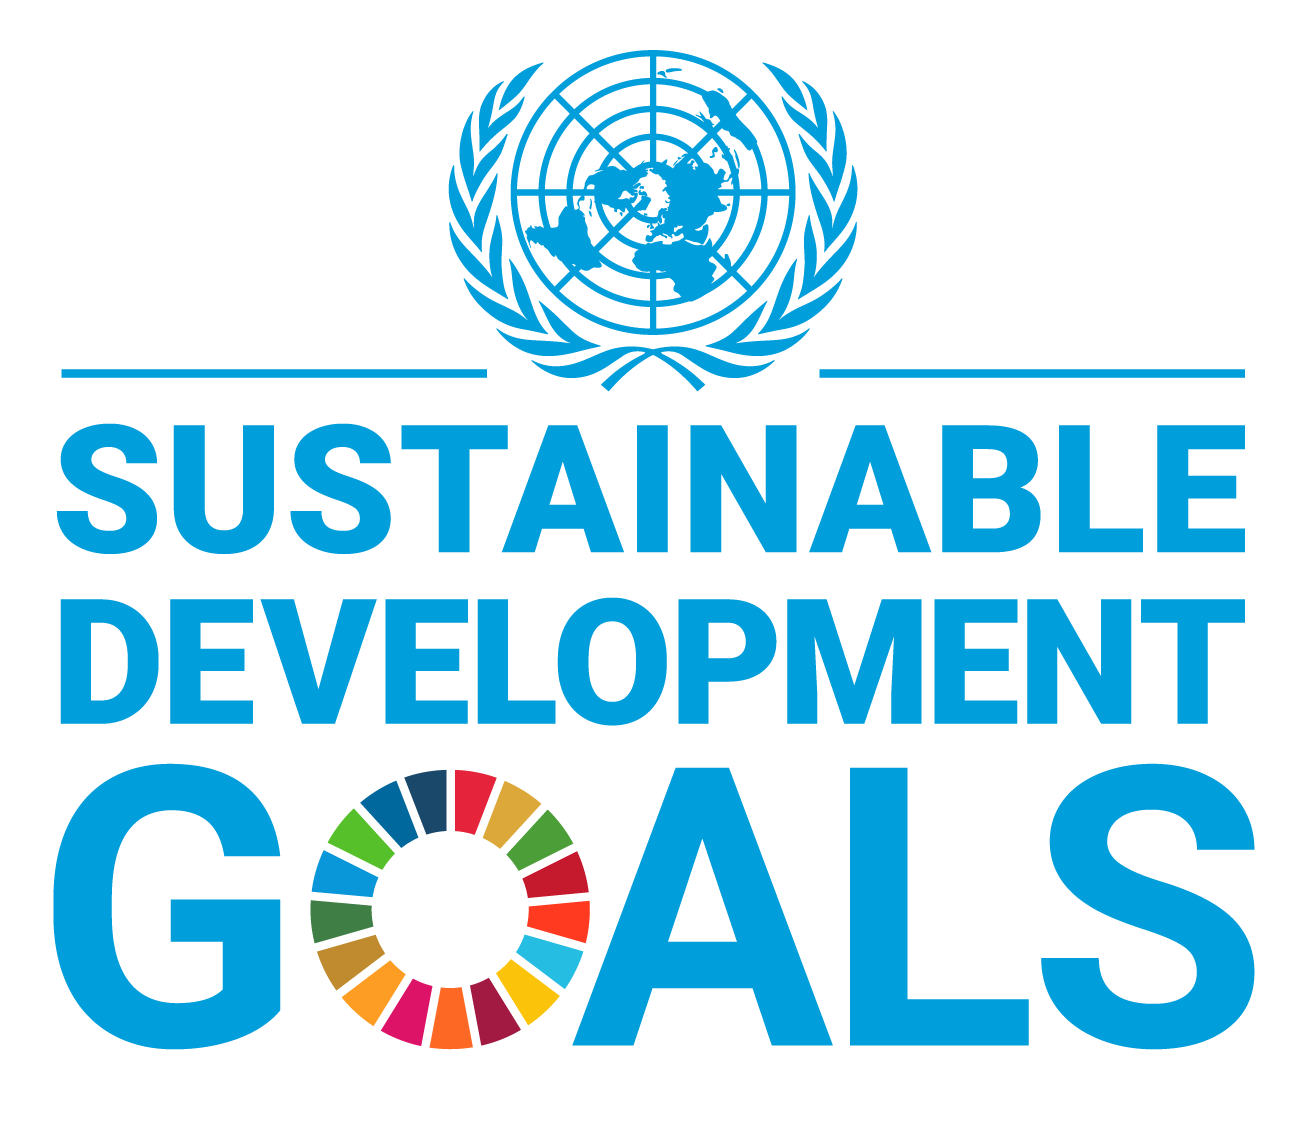 UN SDG Logo